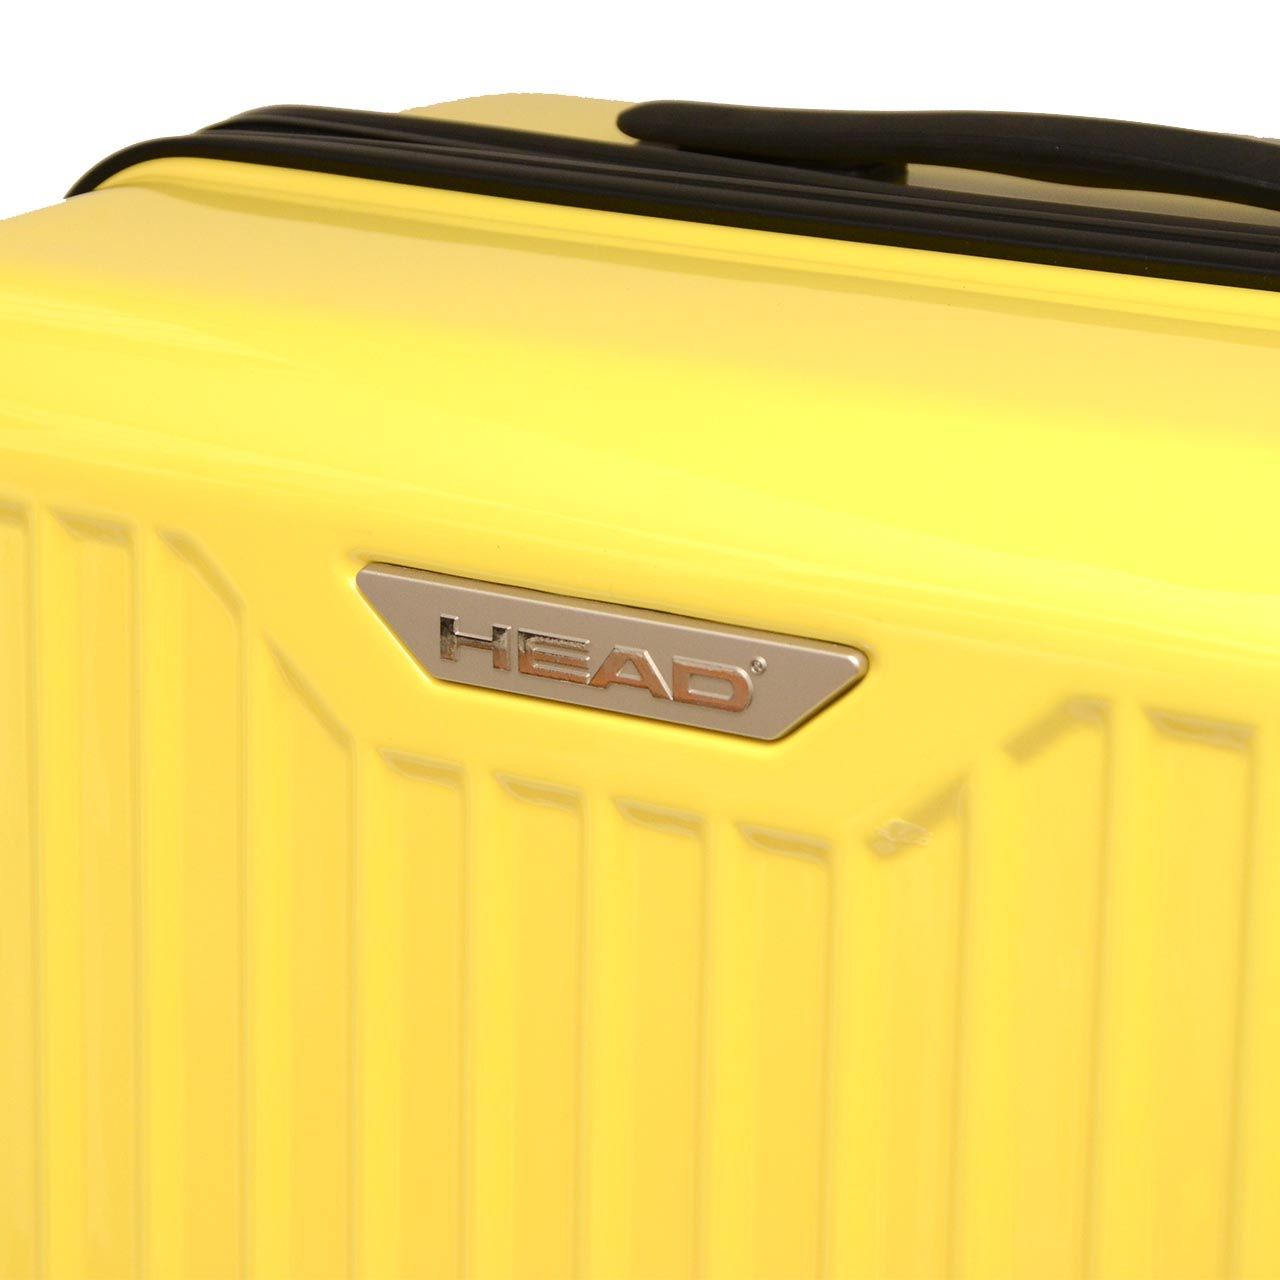 چمدان هد مدل HL 003 سایز متوسط -  - 13